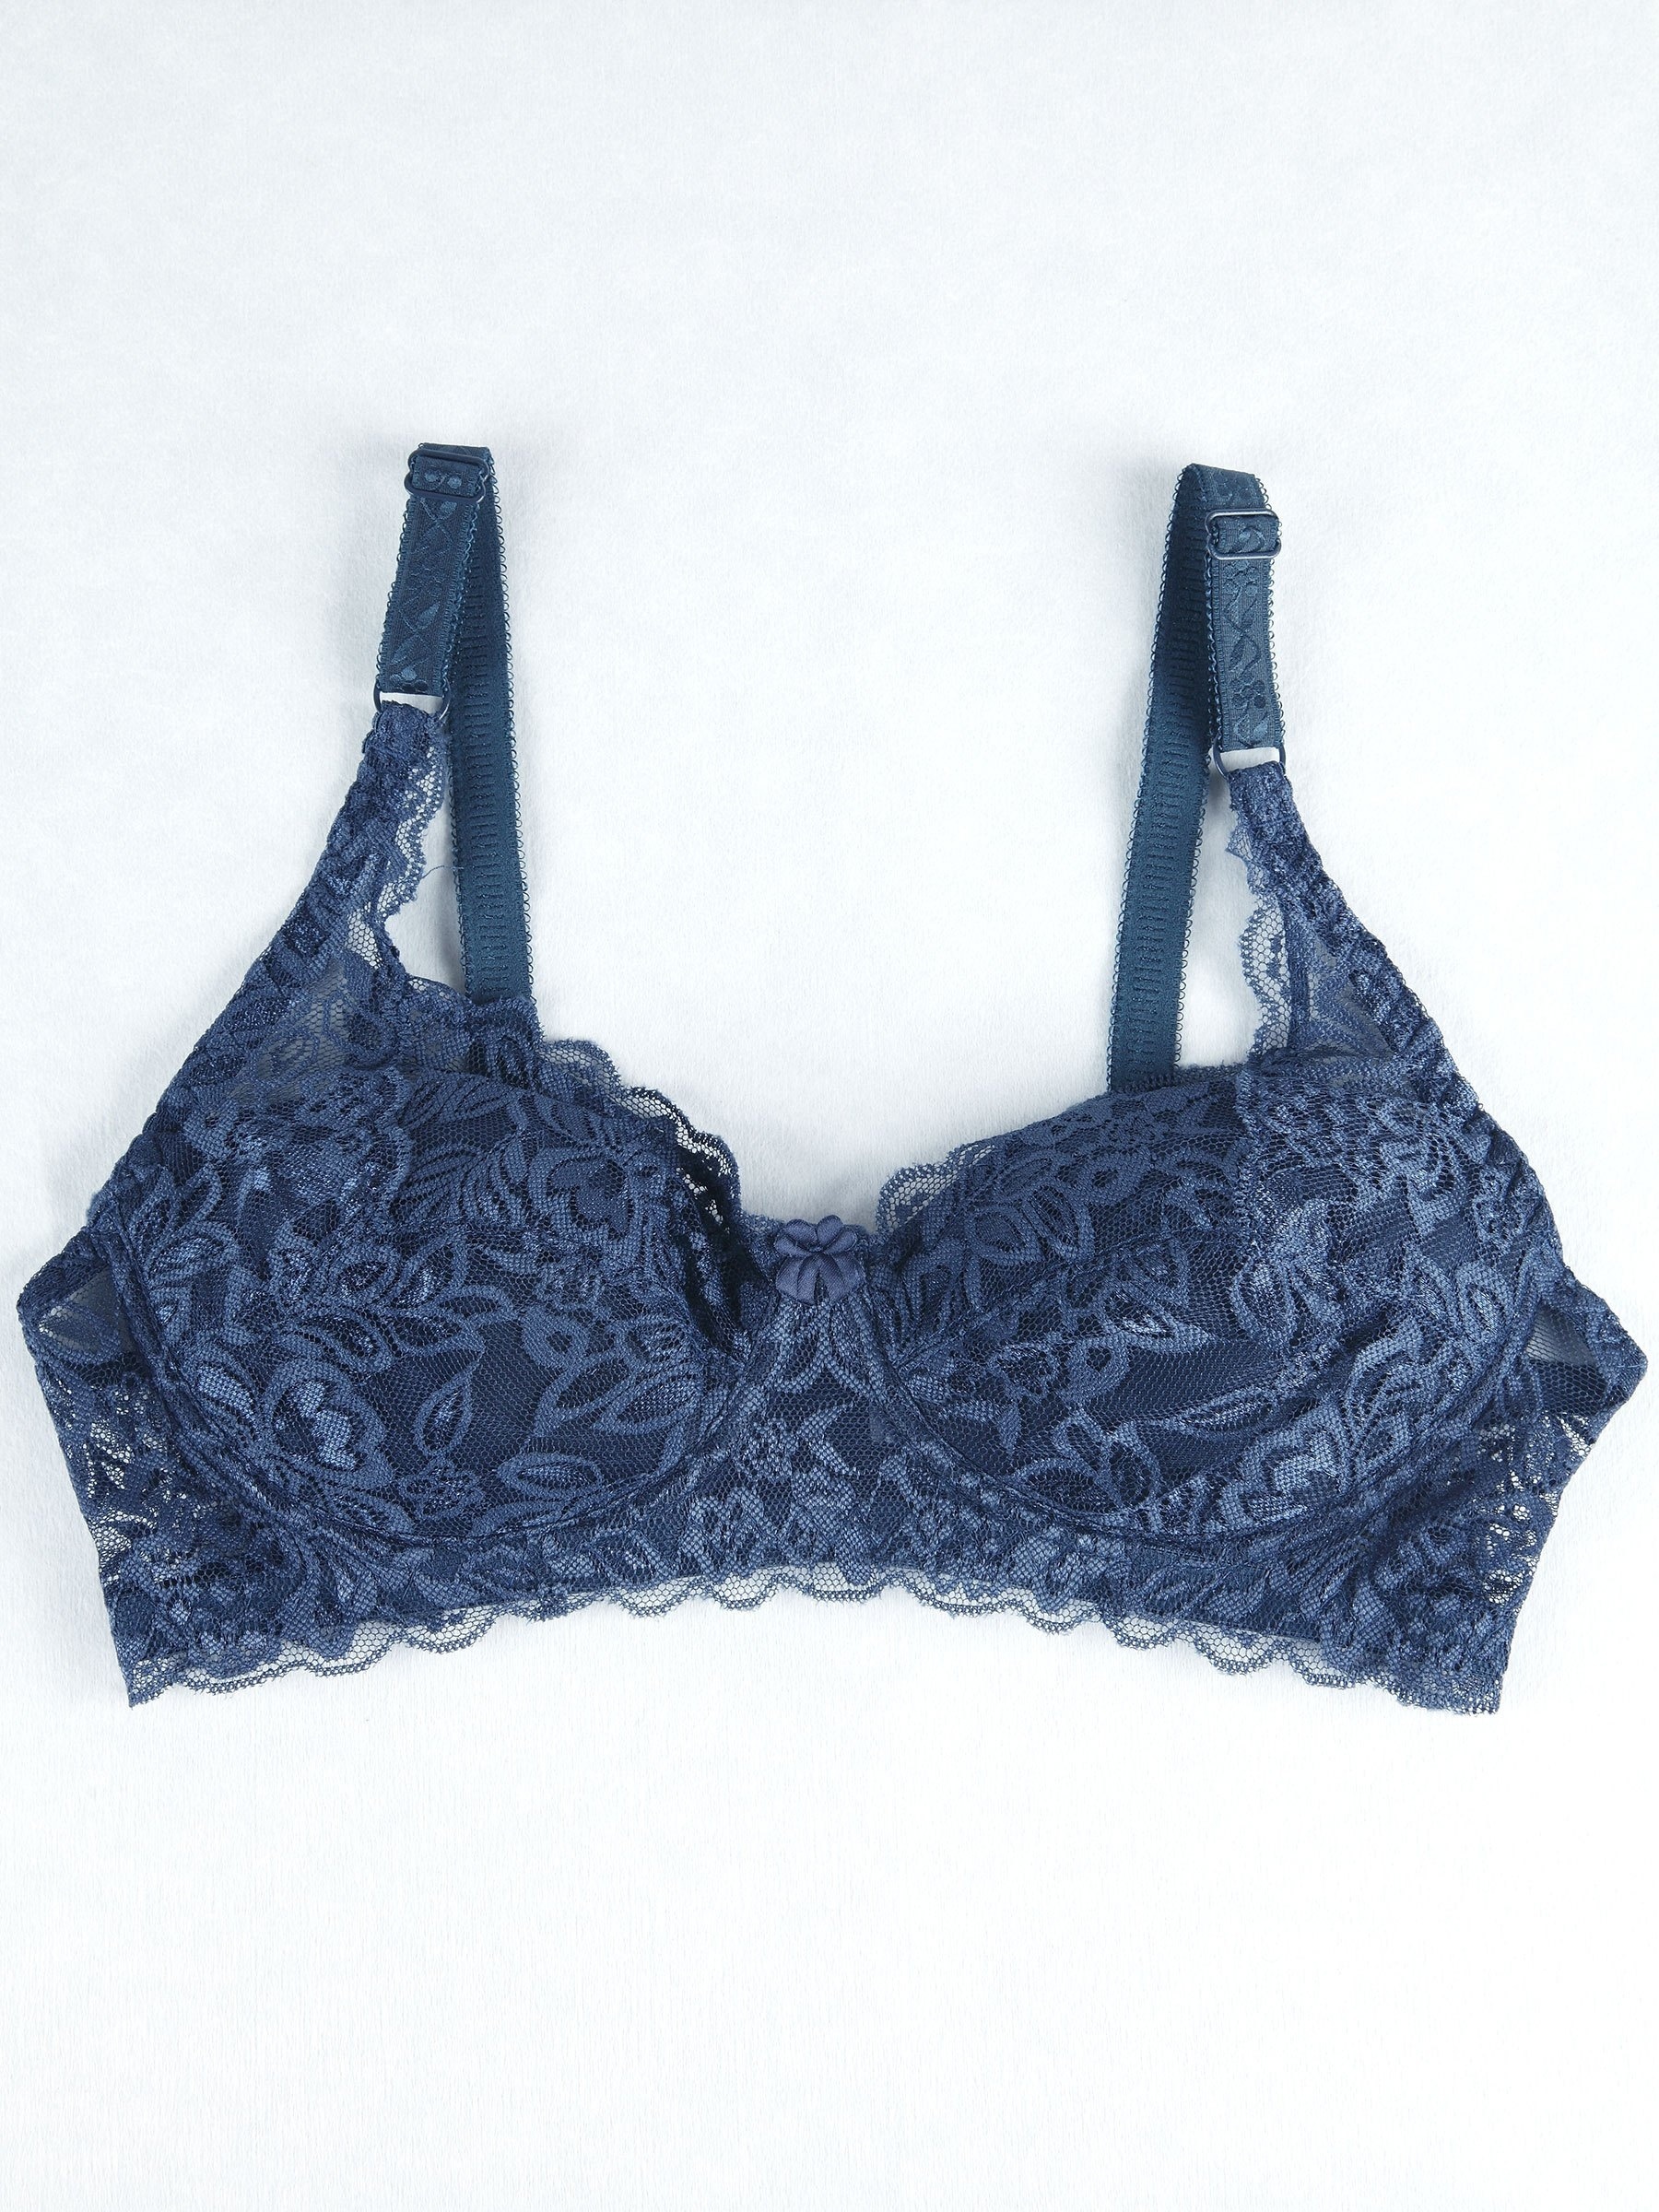 Plain Blue Lace Bra & Panty, Push Up Bra & Bow Decor Panties Lingerie Set,  Women's Lingerie & Underwear